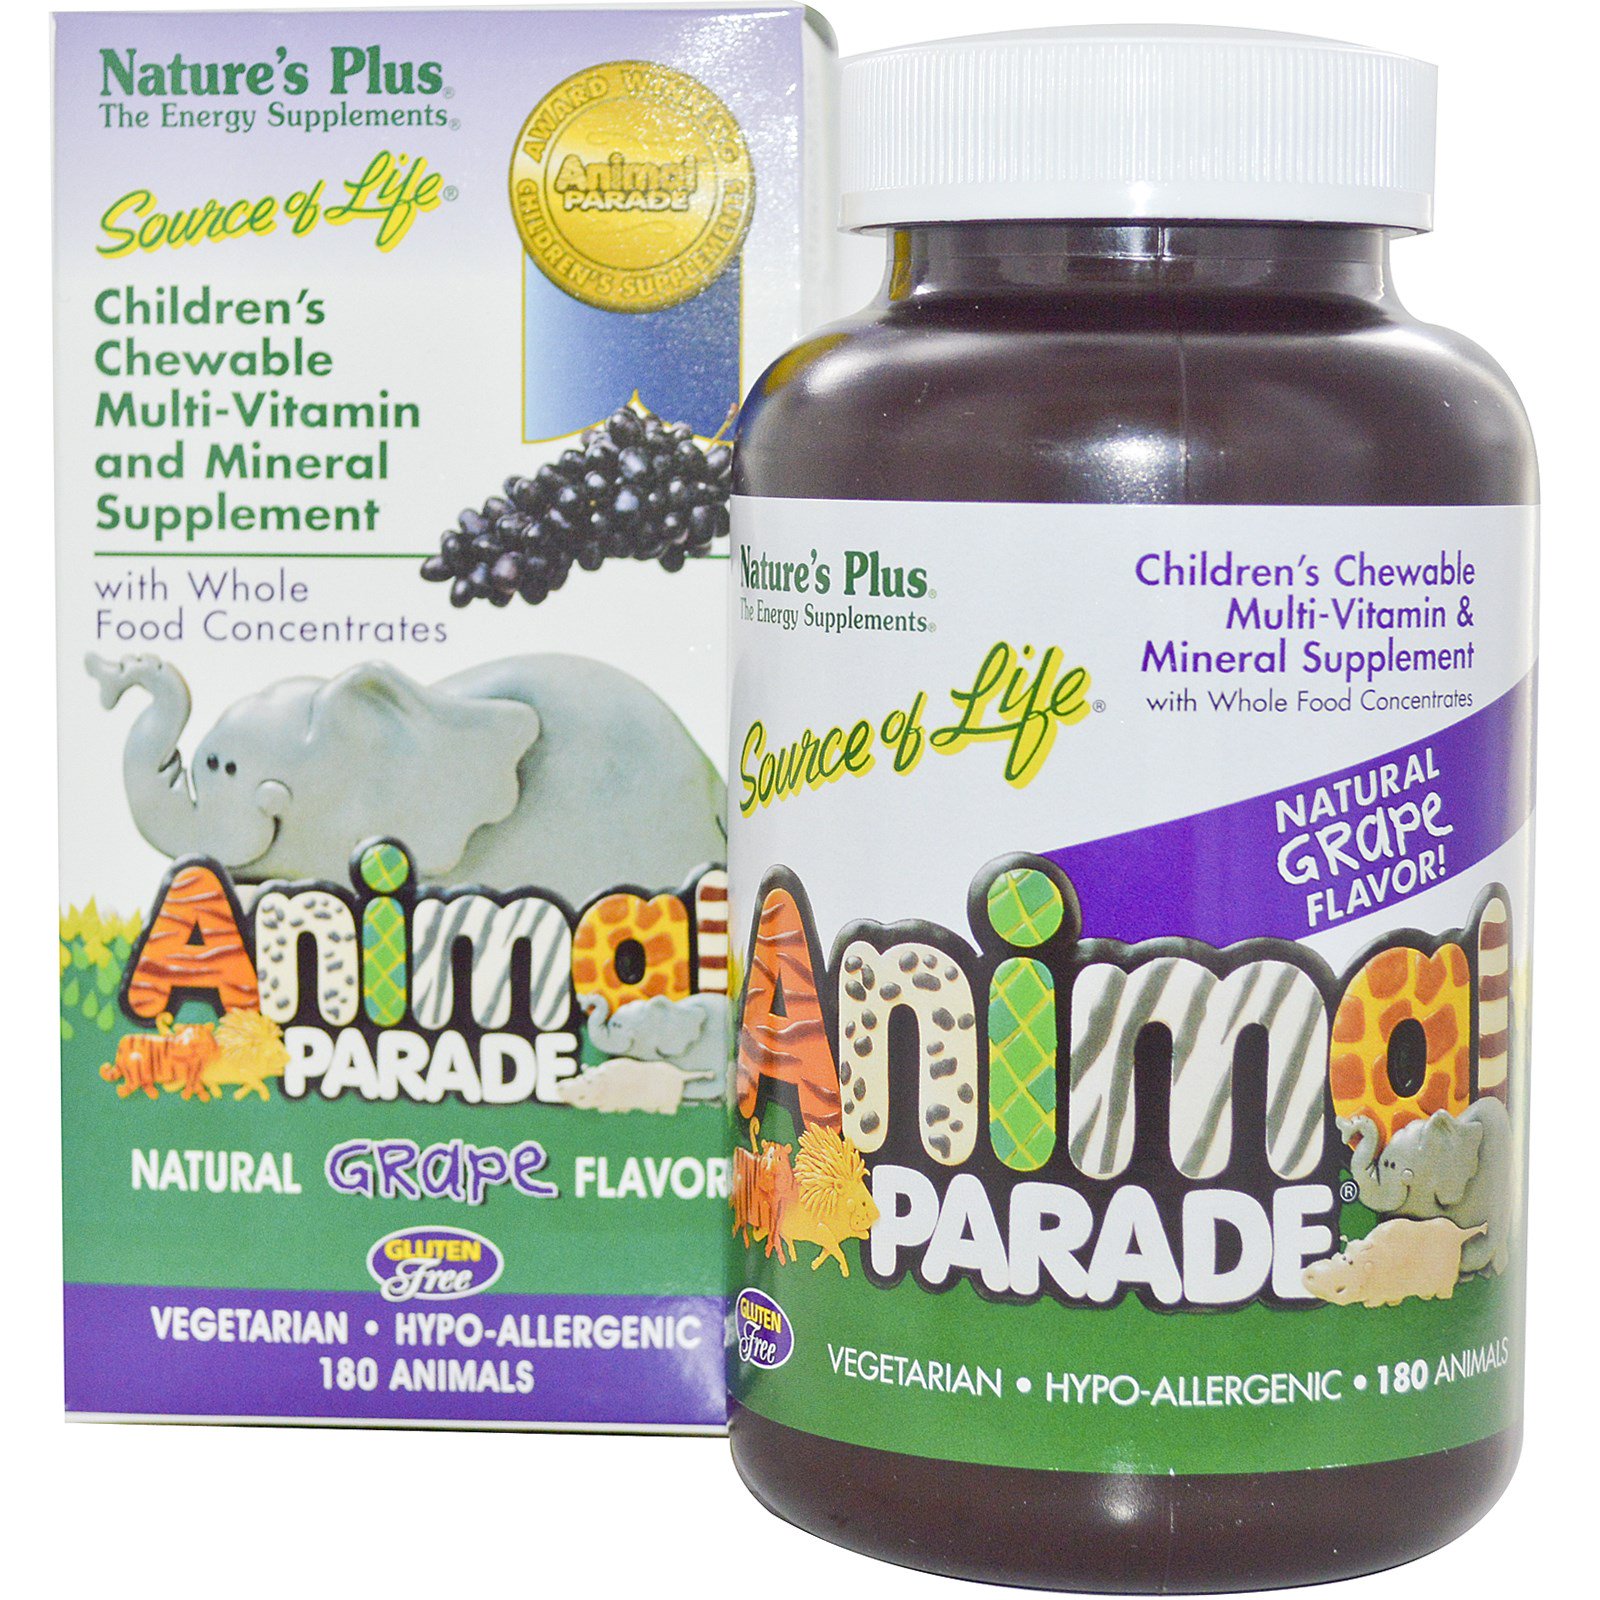 Nature's Plus, Детская Жевательная Мультивитаминная и Минеральная Добавка, Натуральный Виноградный Вкус 180 штук